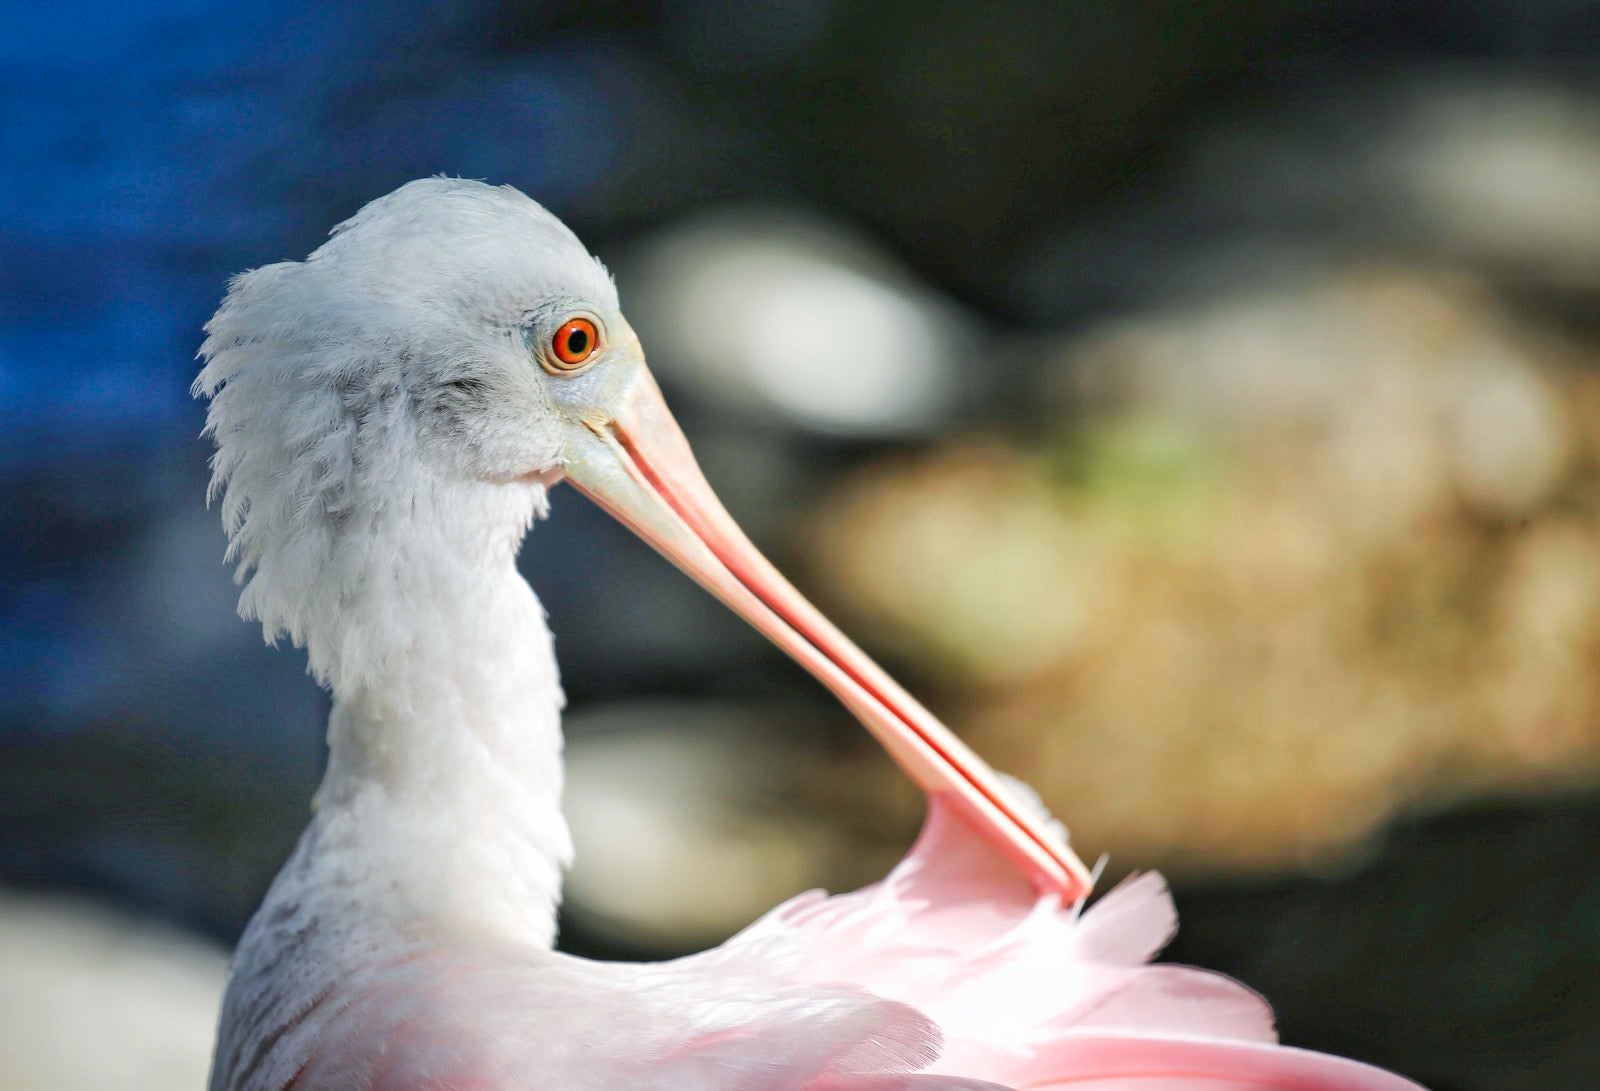 「ピンク色の嘴を持つ鳥」の写真